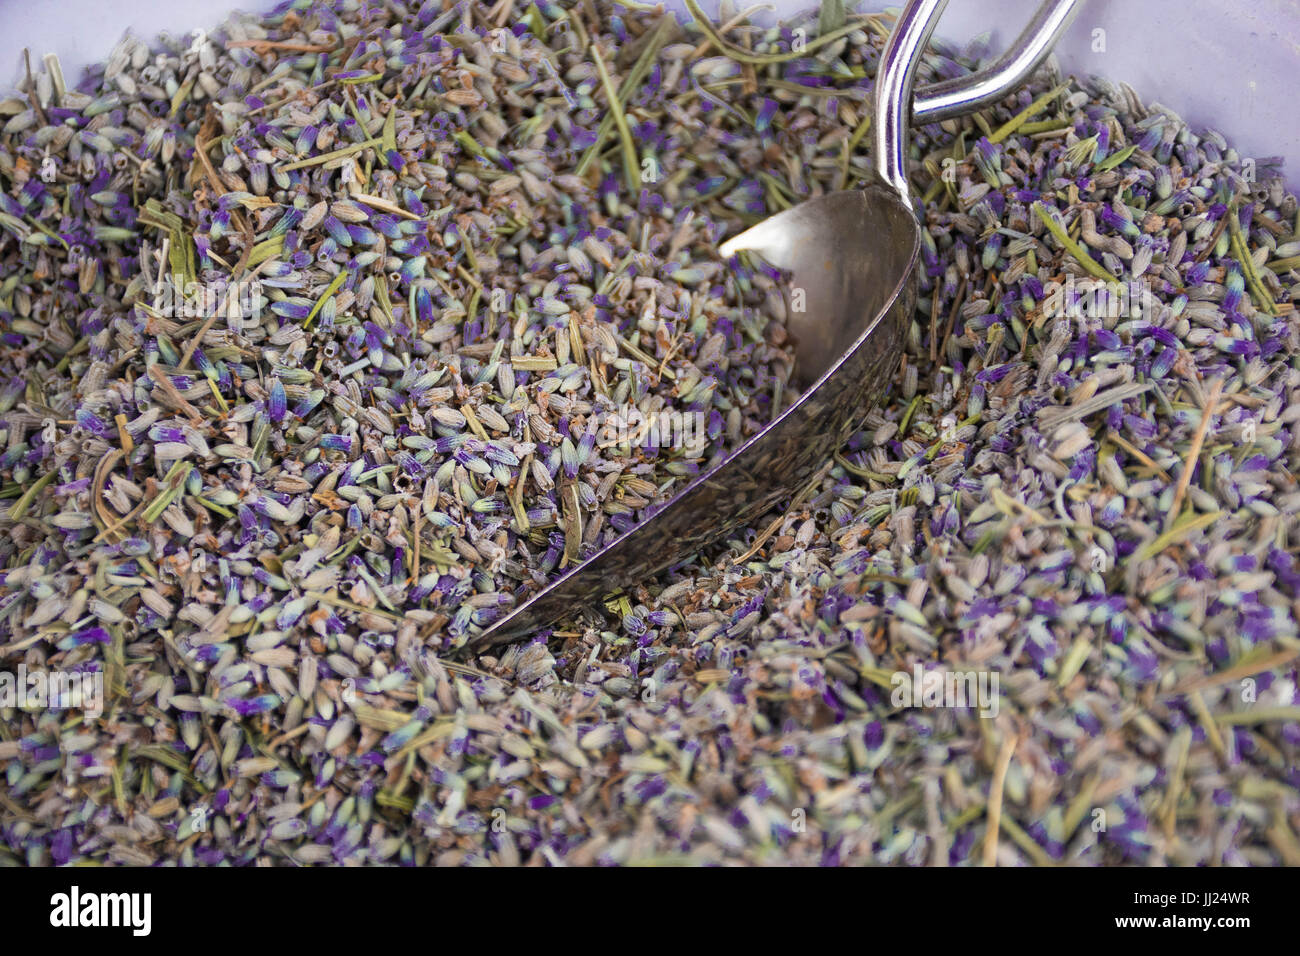 lokal angebauten natürlichen Lavendel locker in einer Schüssel mit einer Schaufel Stockfoto